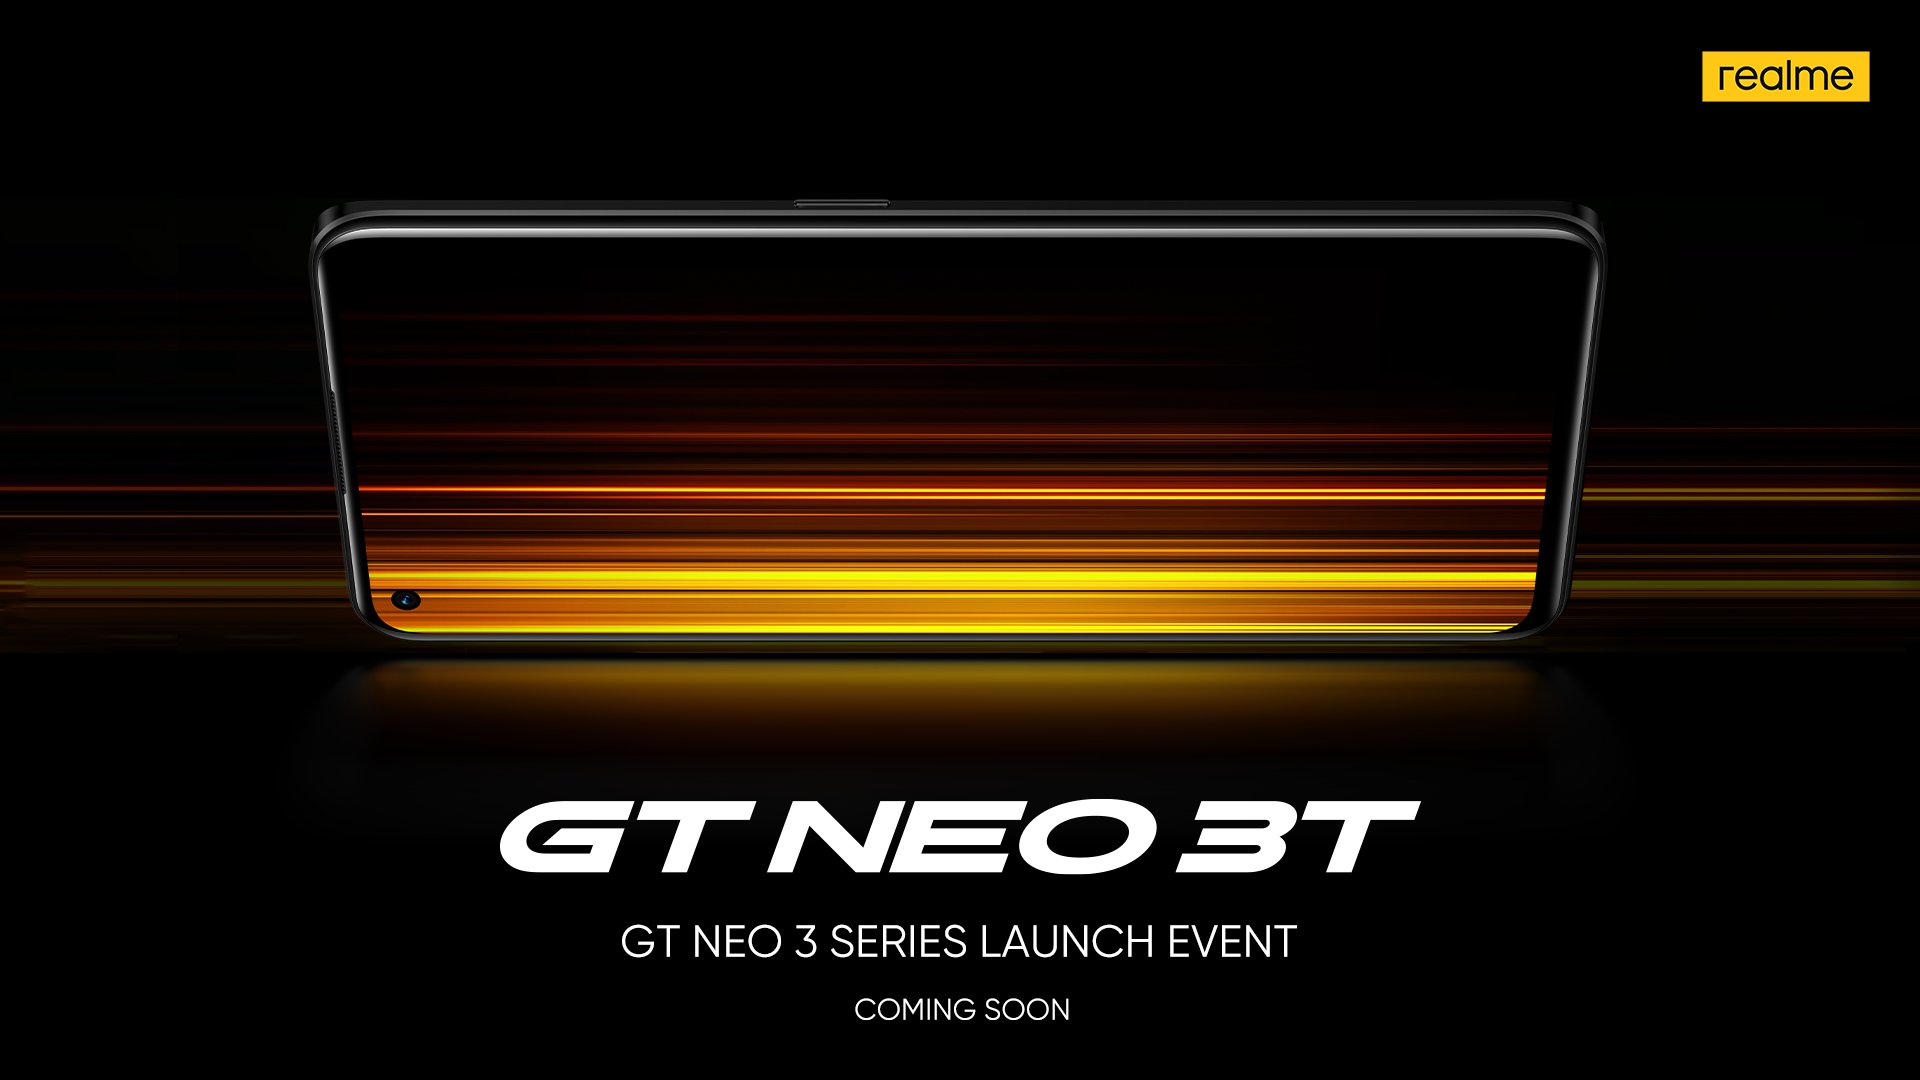 realme GT Neo 3T akan dilancarkan untuk pasaran global - guna cip Snapdragon 870 3